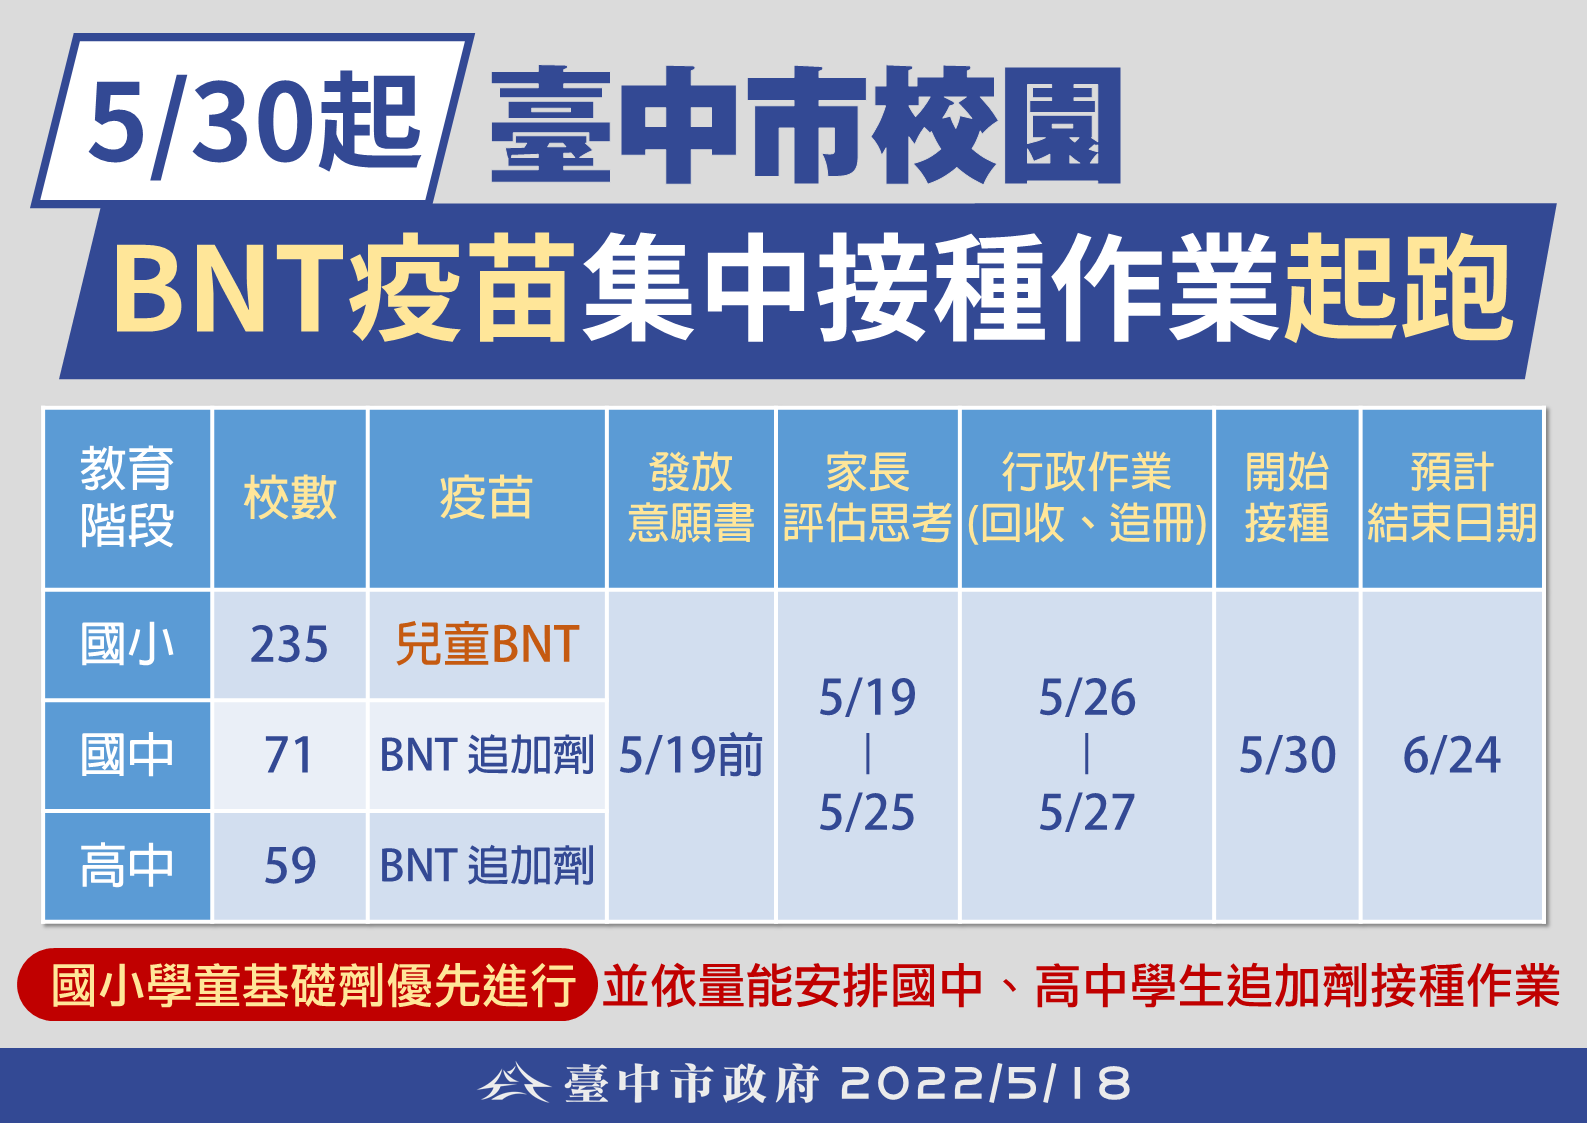 臺中市BNT疫苗校園集中接種日程